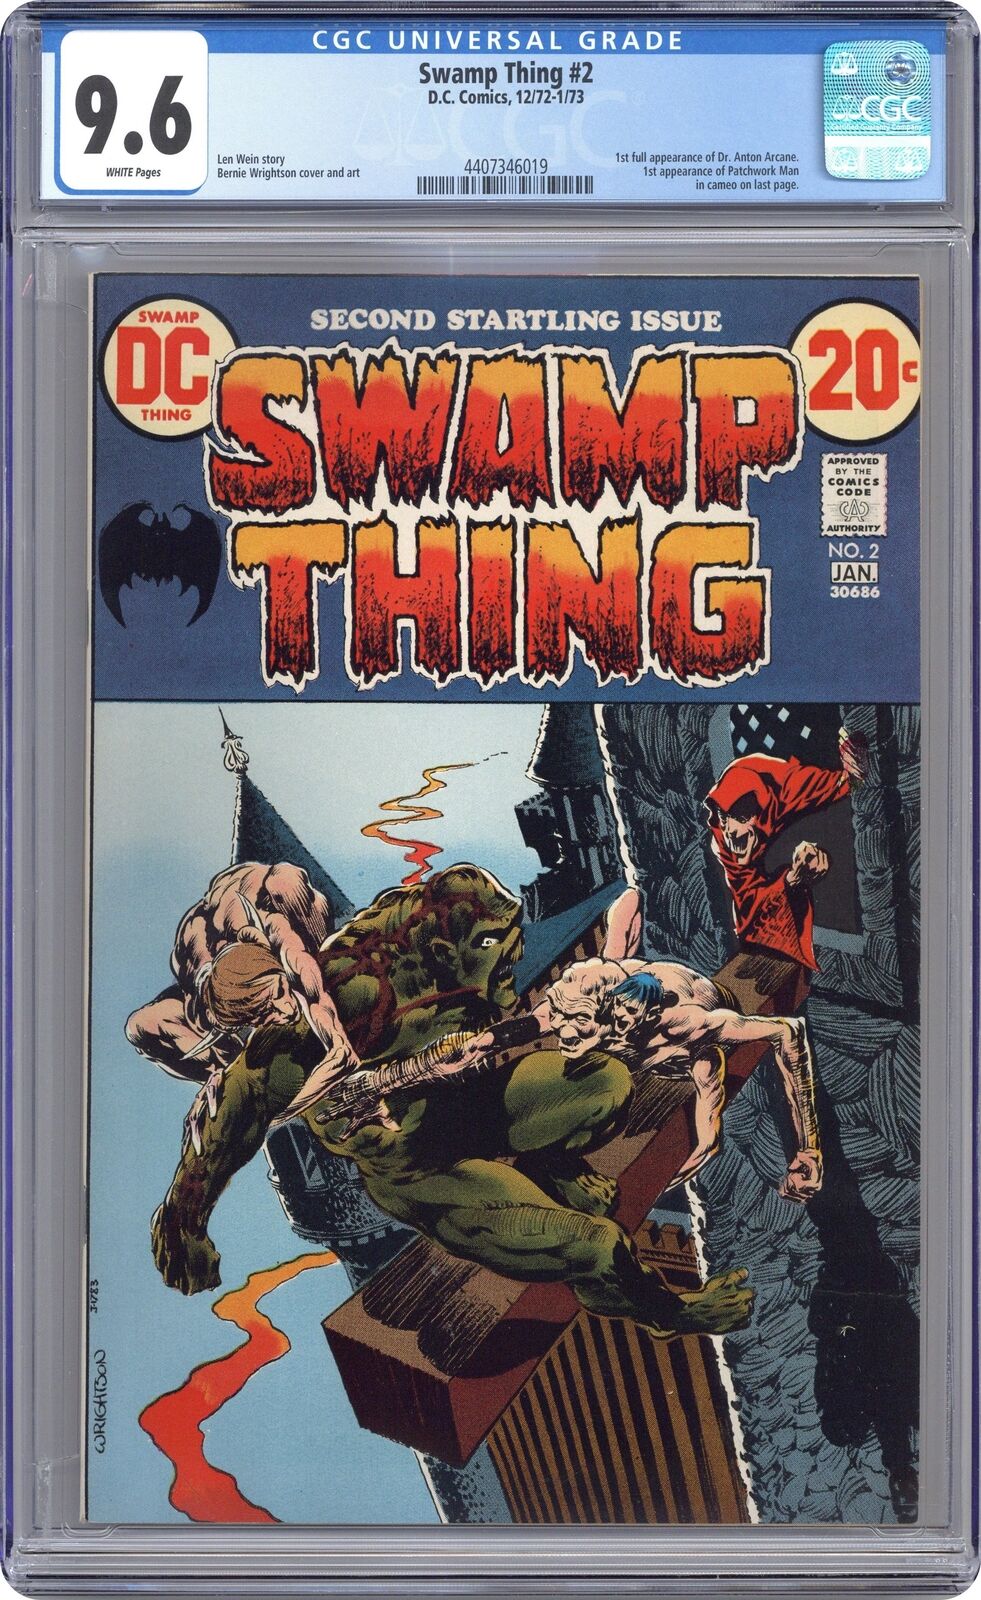 Swamp Thing #2 CGC 9.6 1973 4407346019